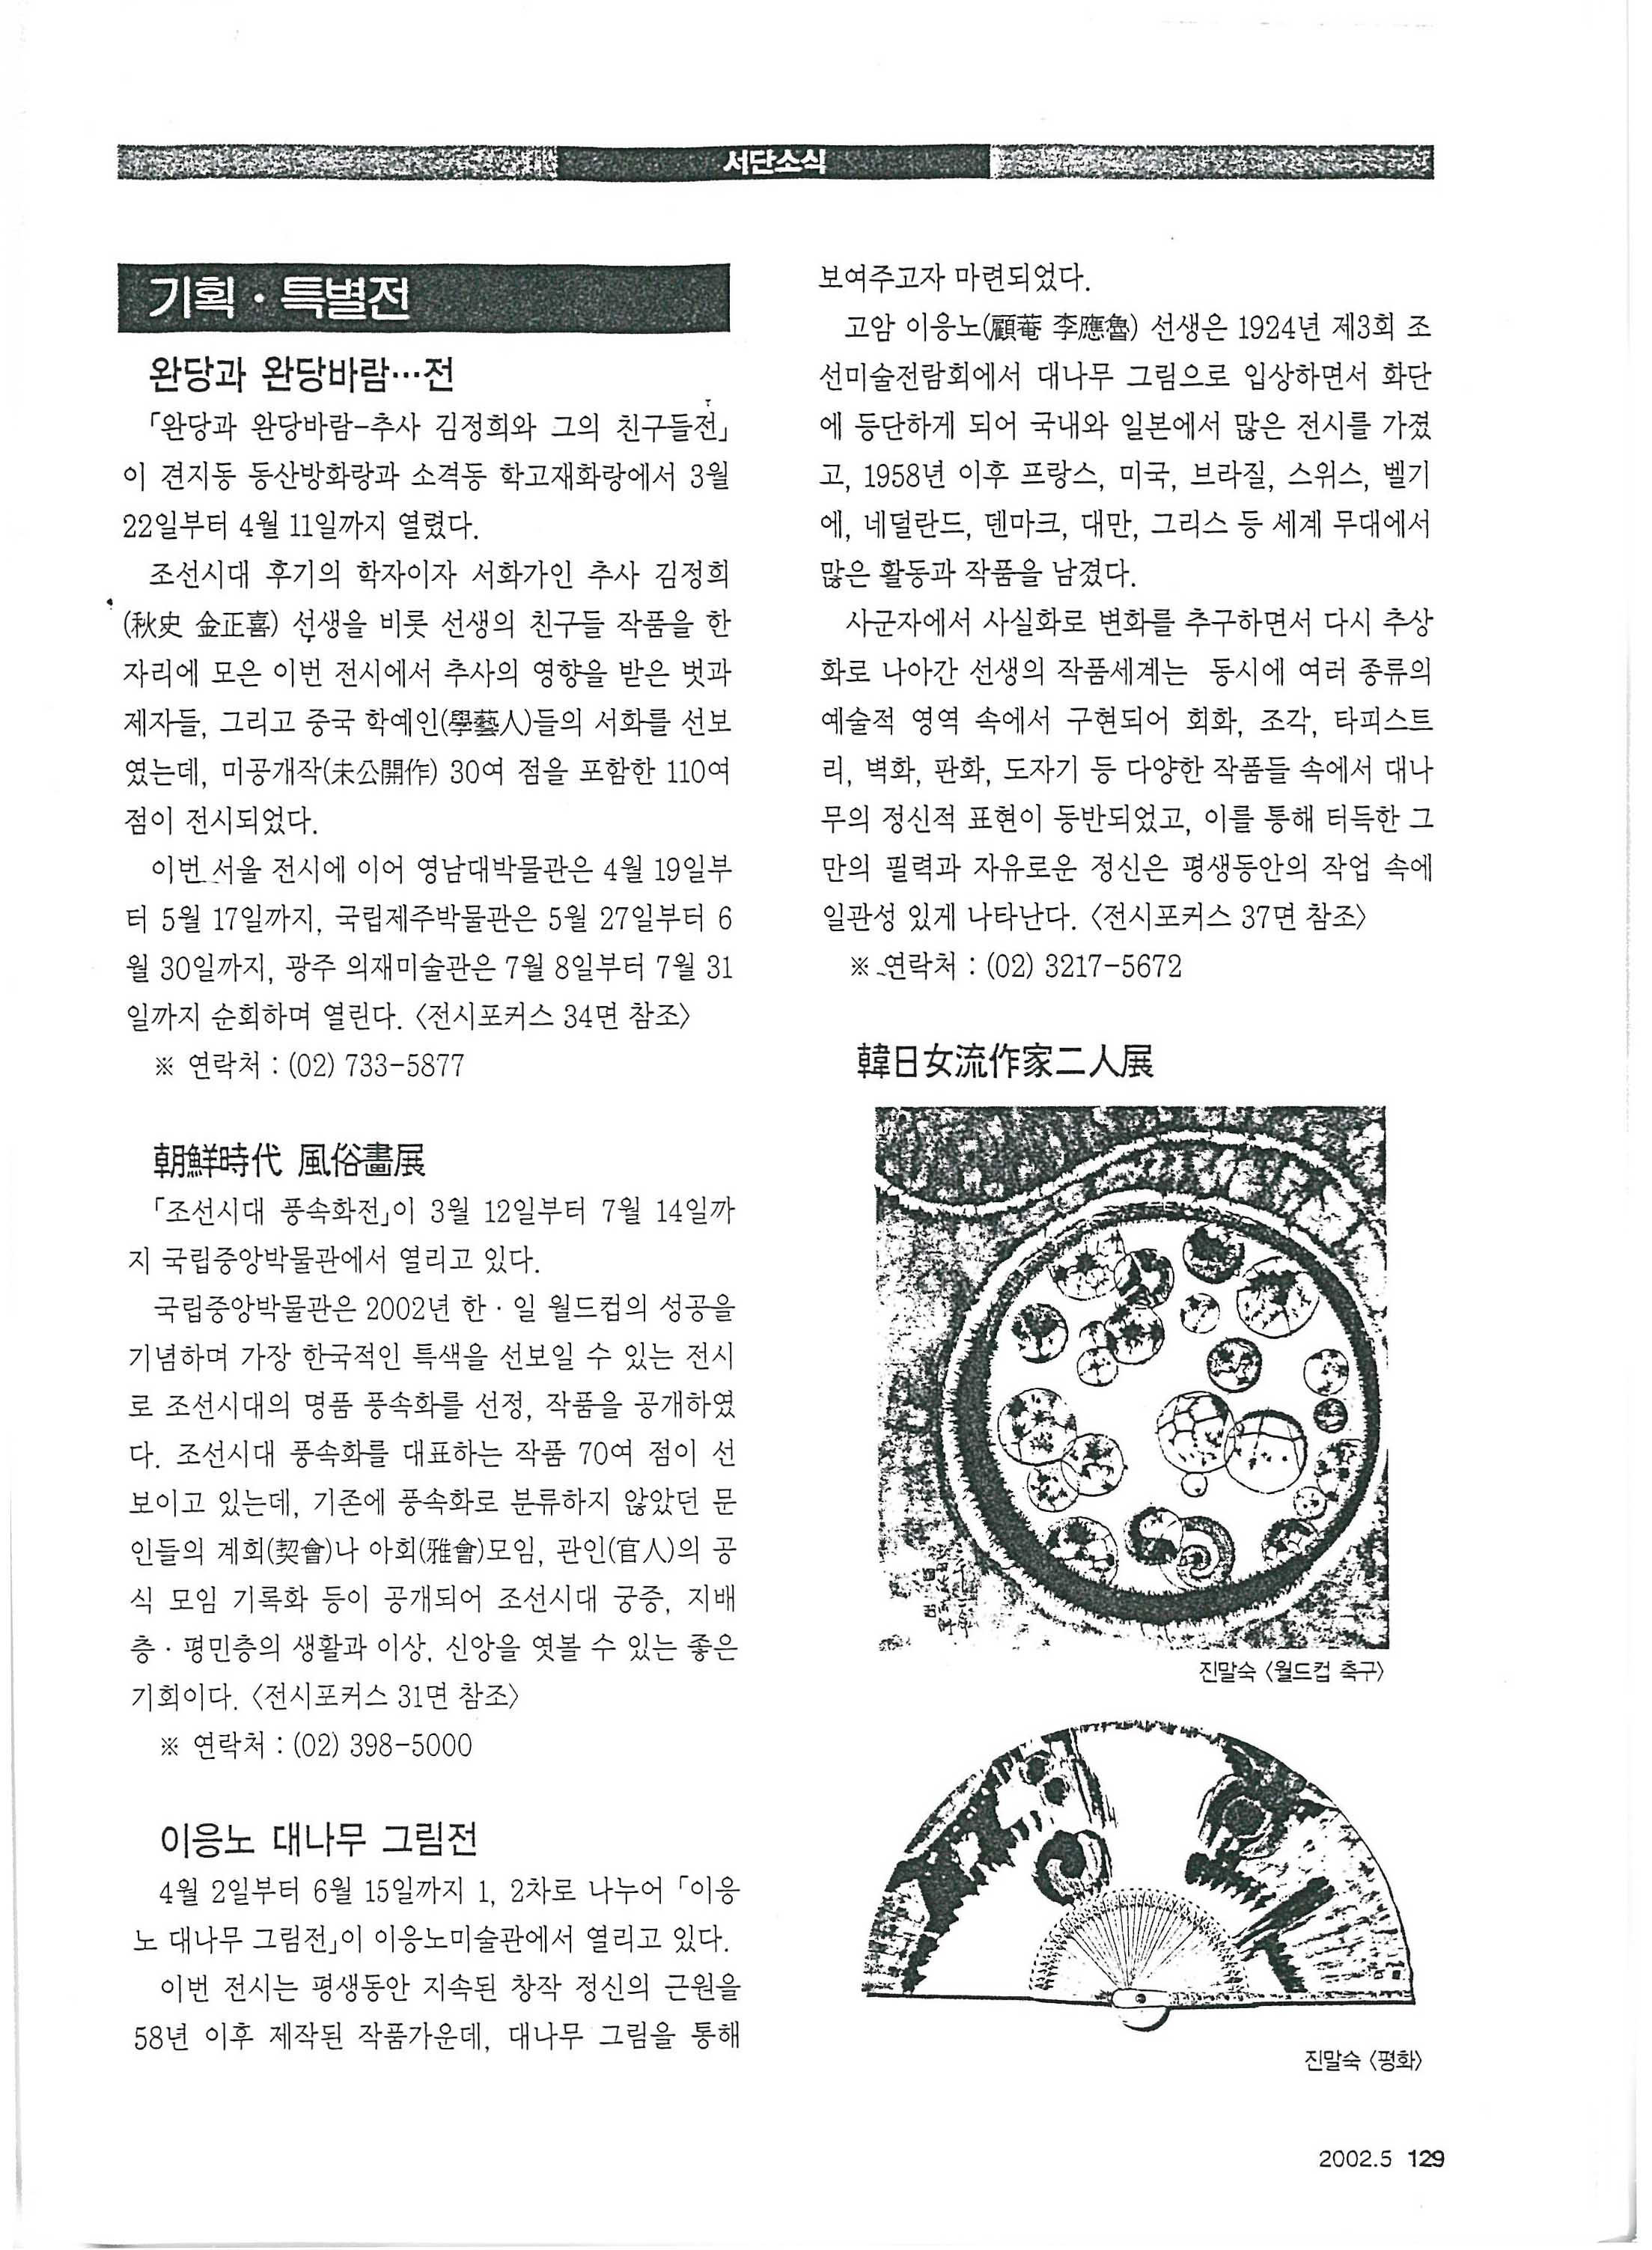 「기획·특별전: 이응노 대나무 그림전」, 『월간 서예문인화』